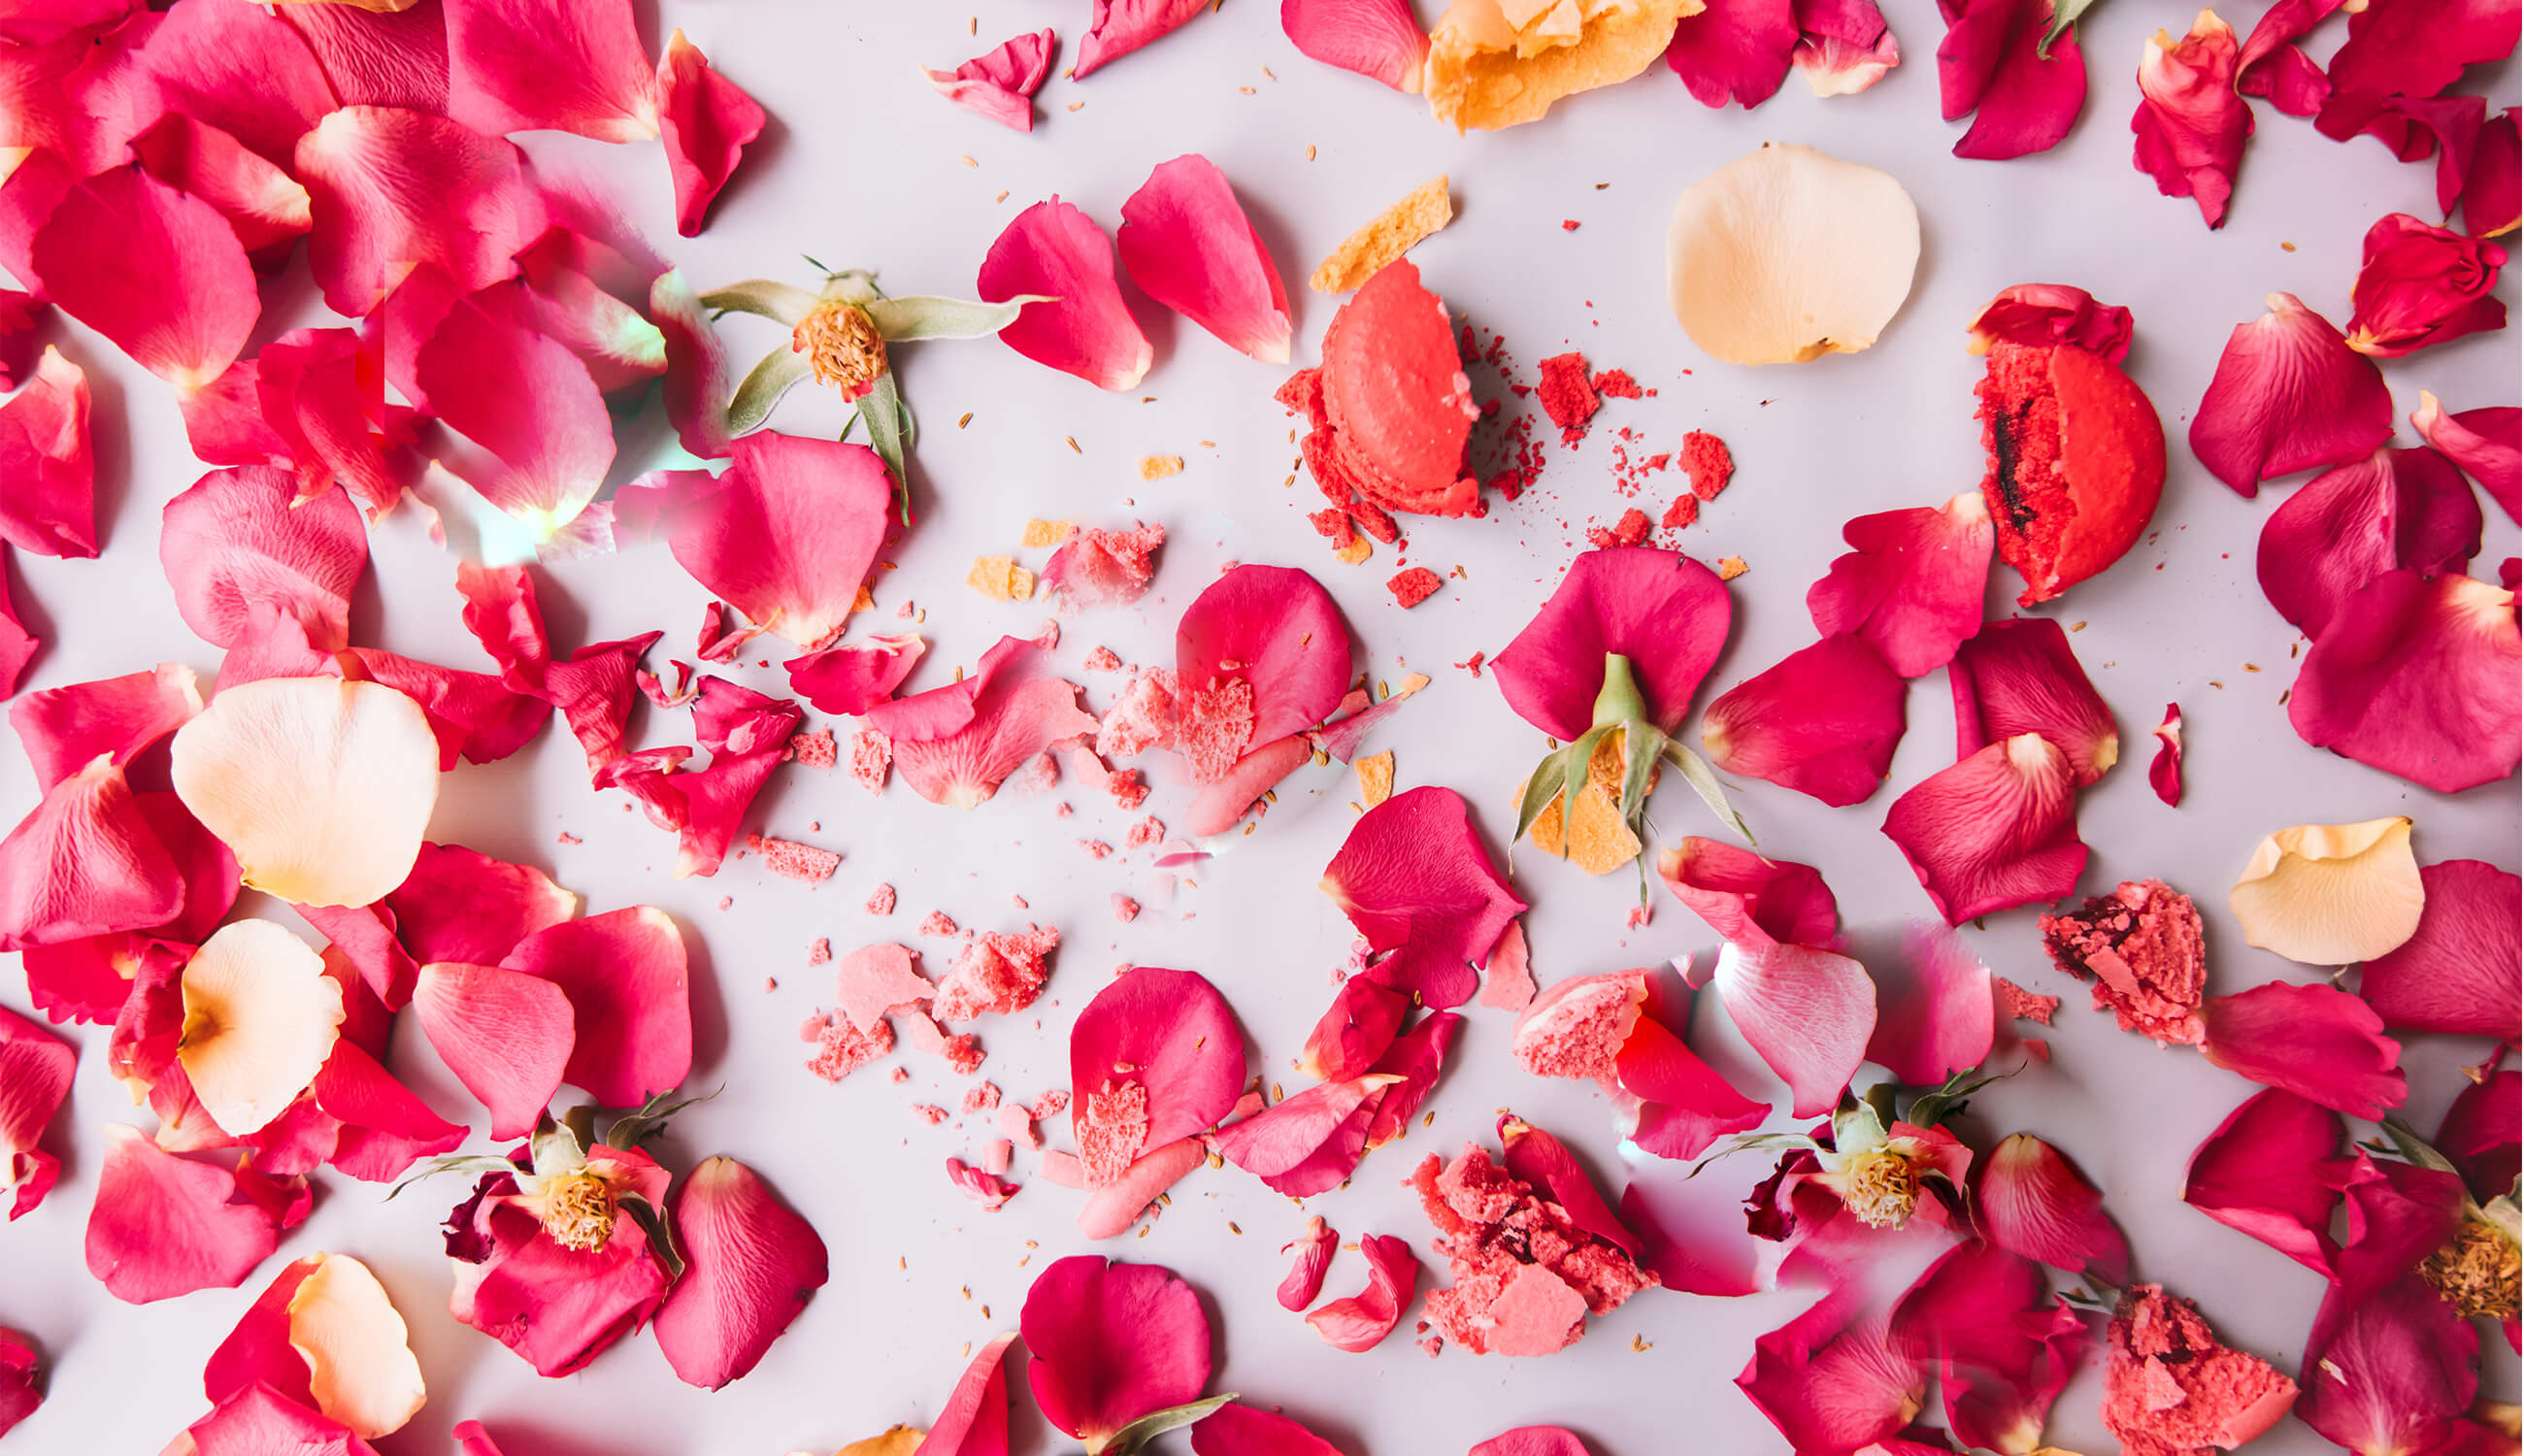 Crushed rose petals.jpg